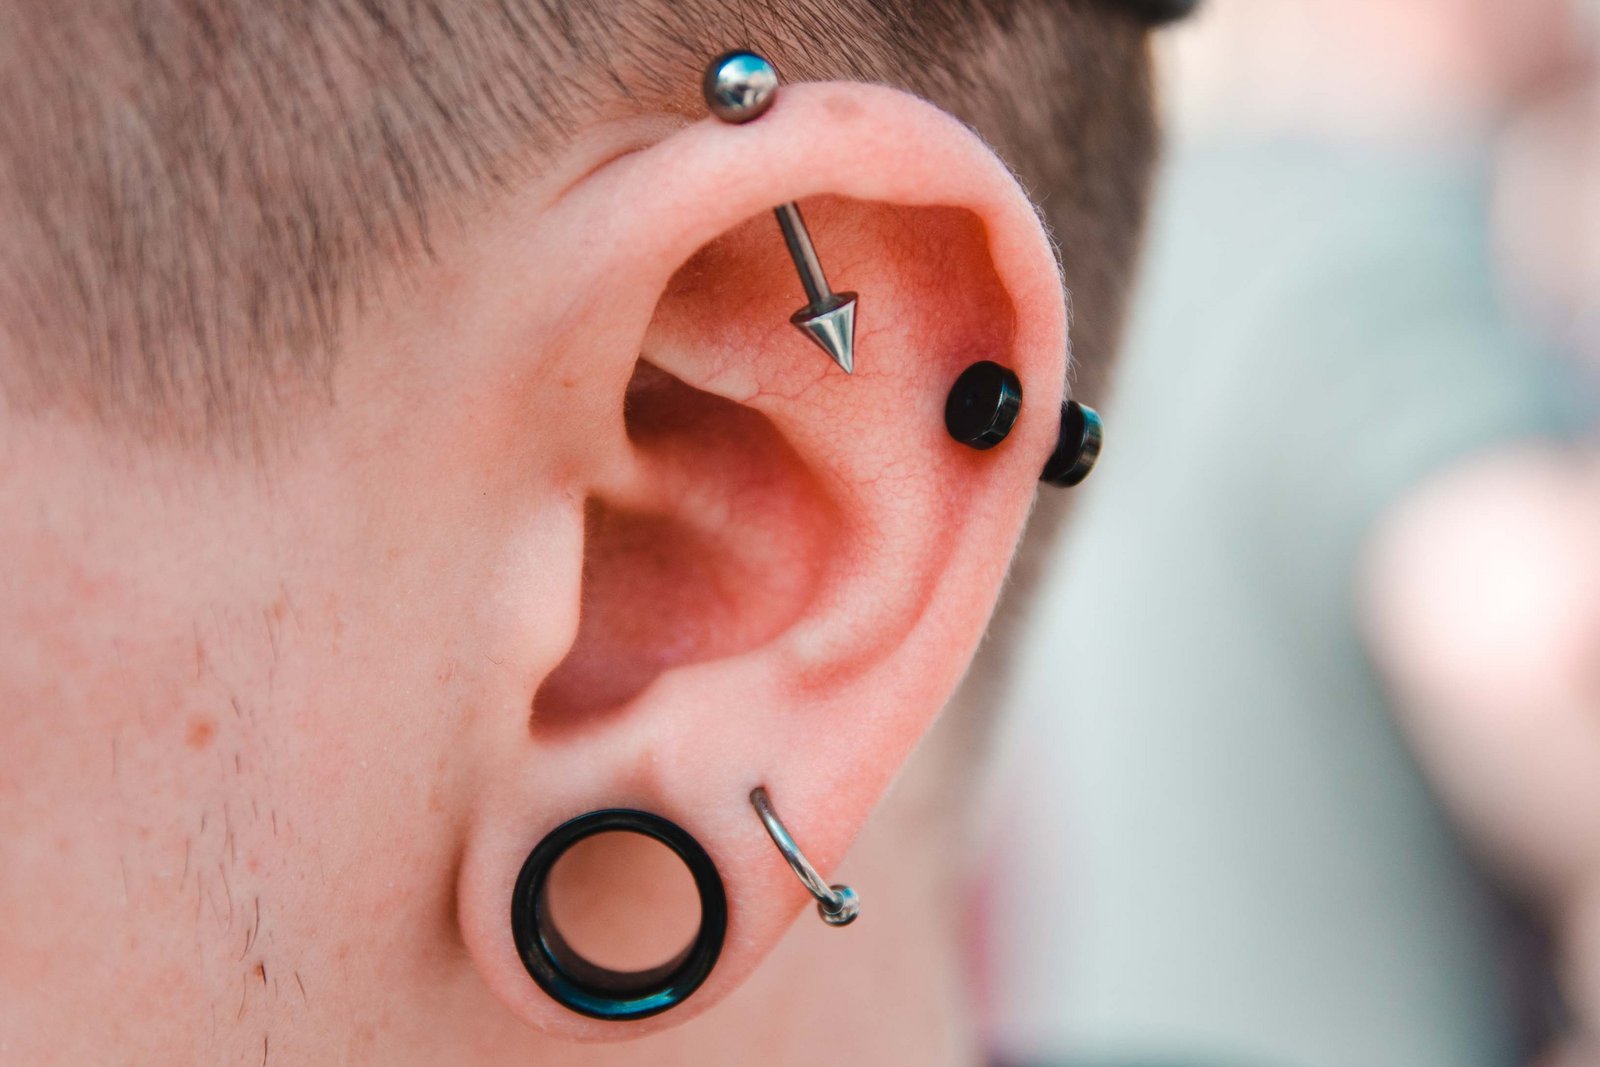 Man with many piercings in ear